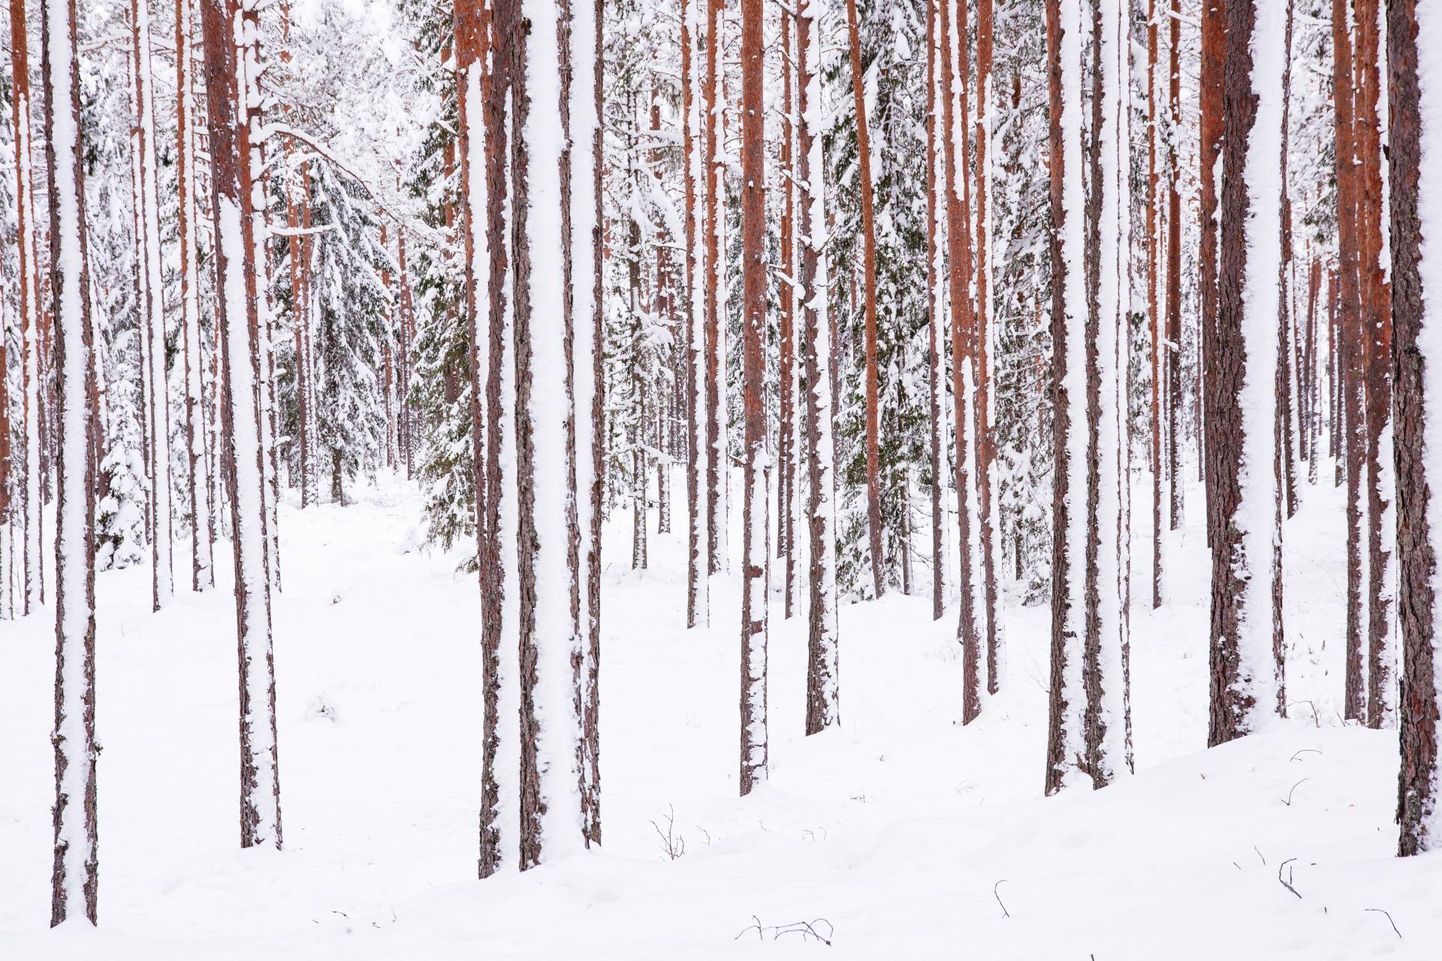 Pärast tuisku katab lumi peale okste tüvesidki ja nõnda võib saada eriti võimsa elamuse, kõndides sihvakate mändidega okasmetsas.